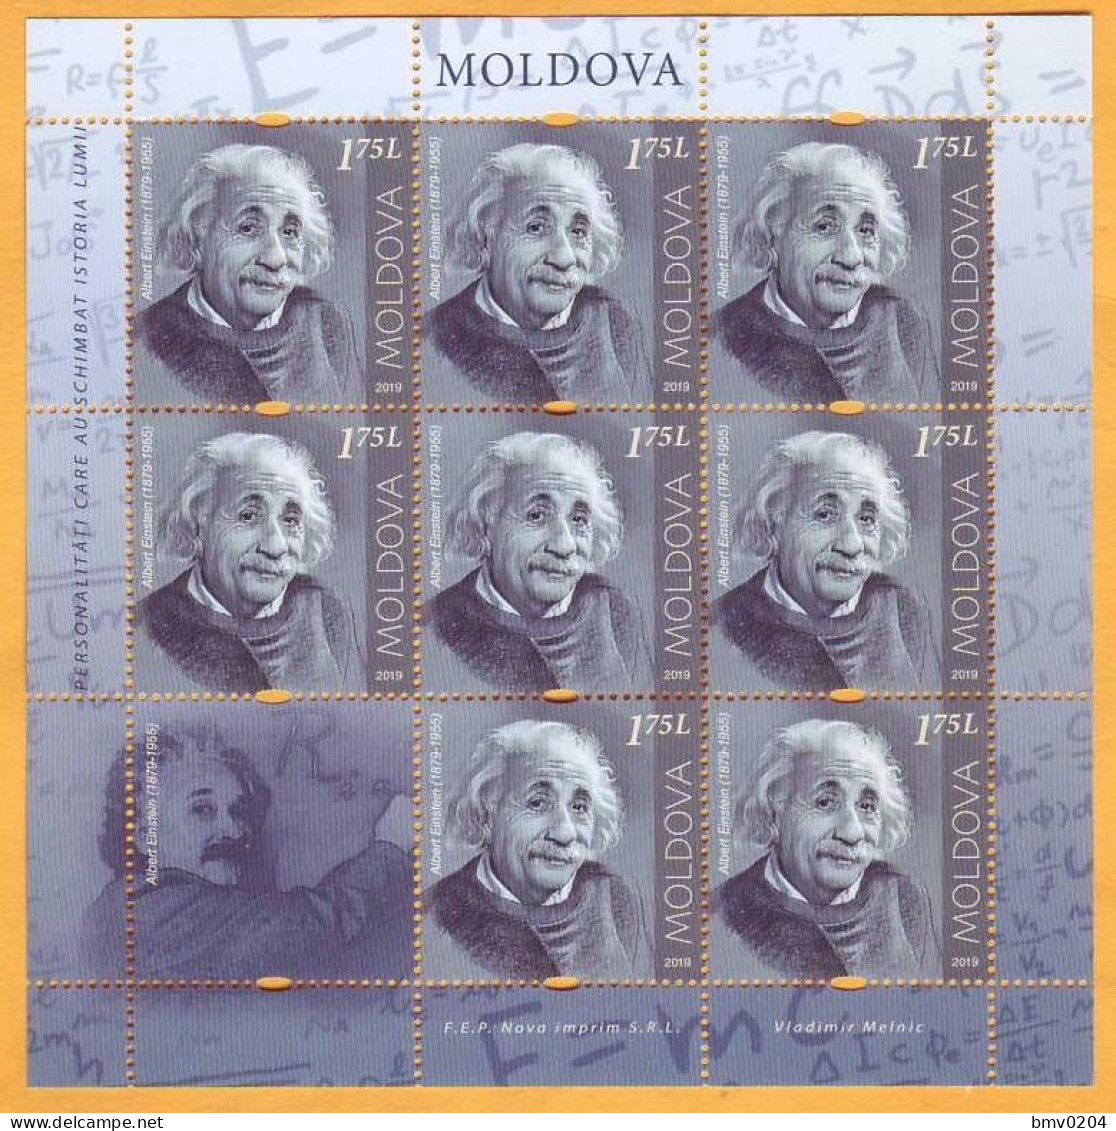 2019 Moldova Moldavie  Sheet  Albert Einstein Germany Mint - Albert Einstein